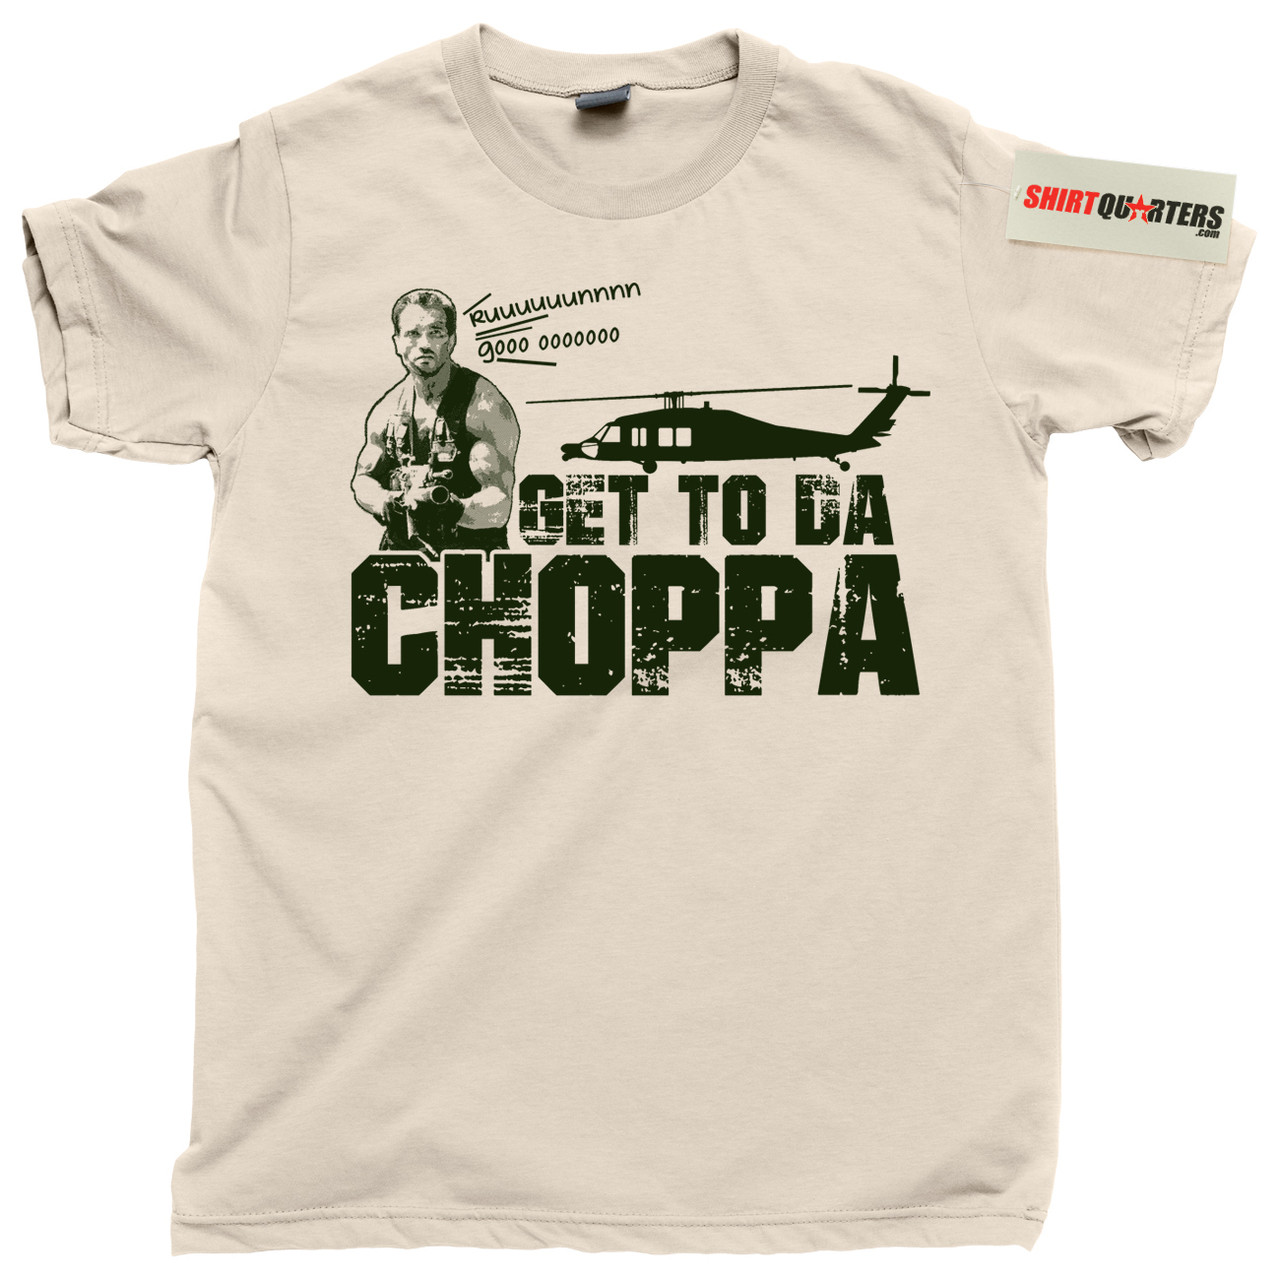 Get To Da Choppa Tshirt Vintage Tshirts Funny Movie Shirts Predator Shirt  Military Shirt